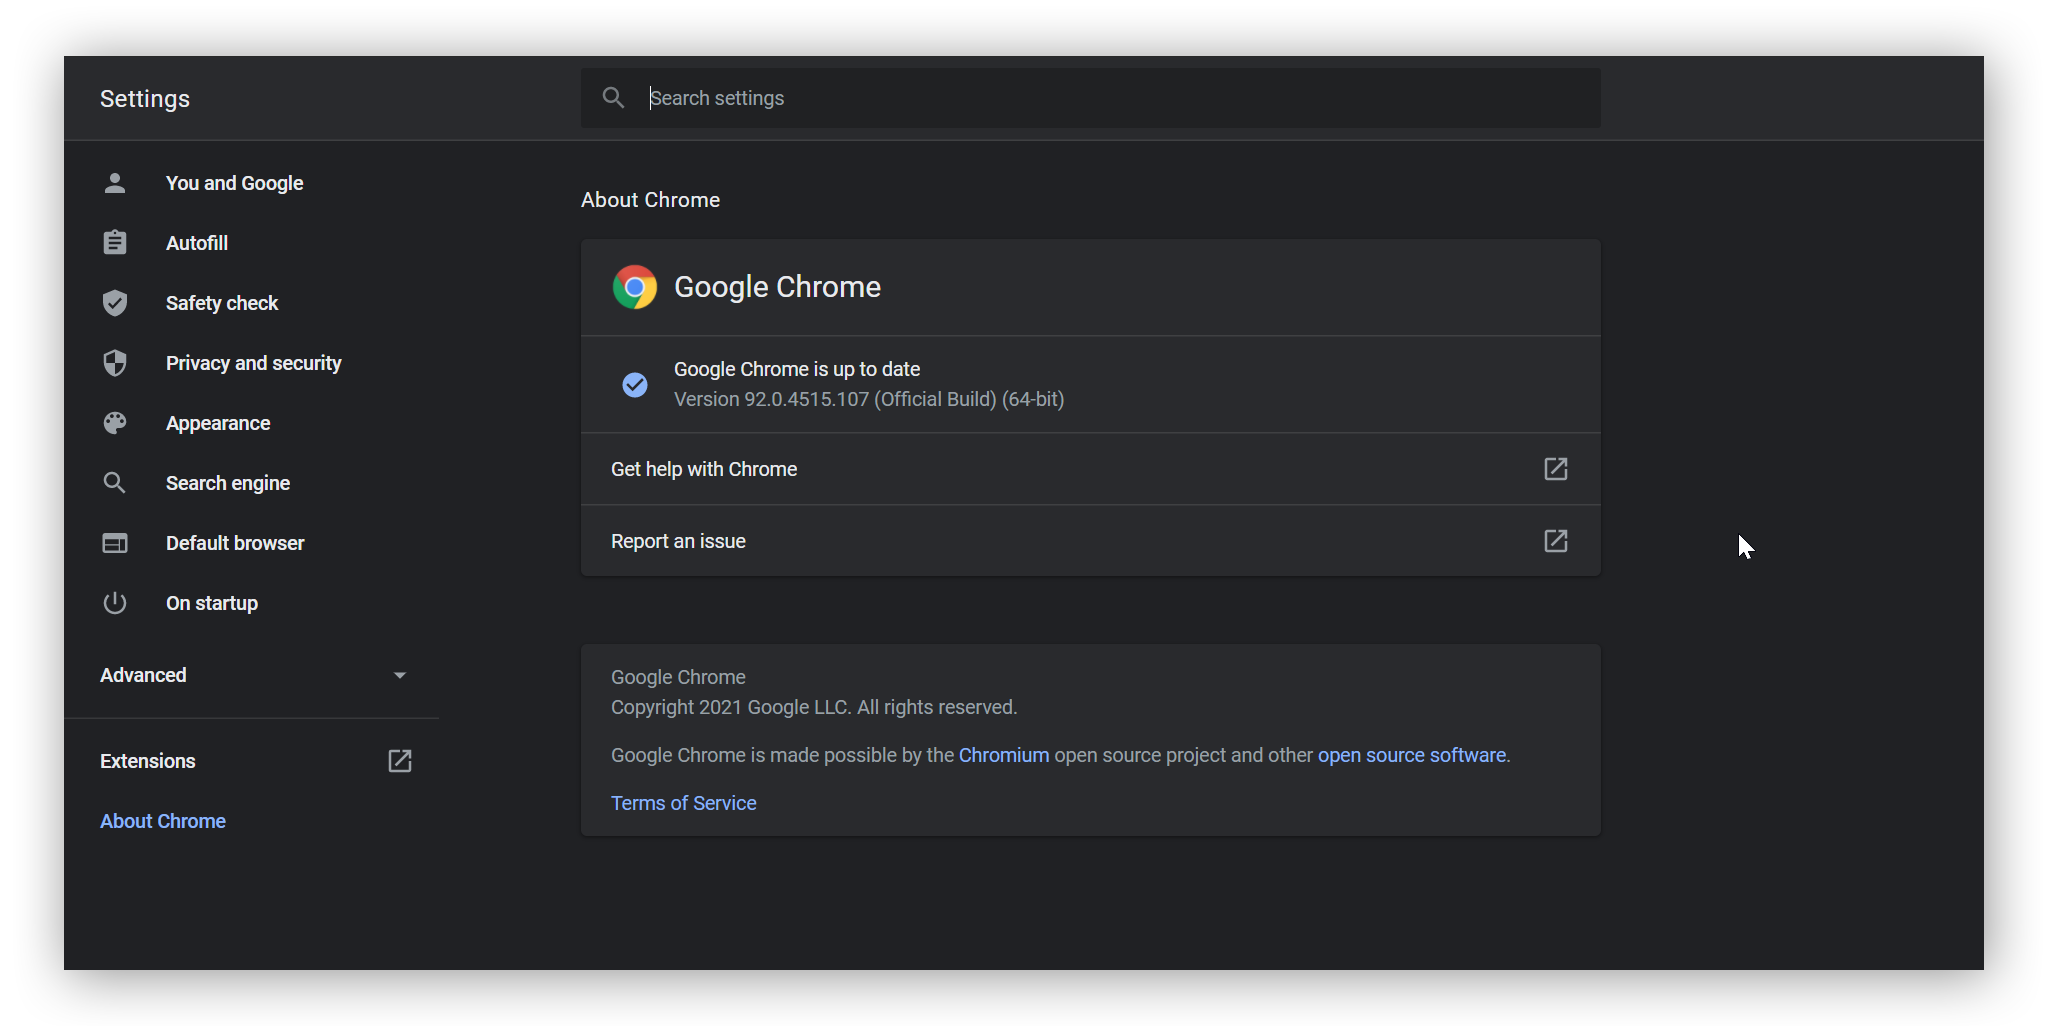 Die Einstellung Über Google Chrome wird angezeigt und zeigt, dass Google Chrome auf dem neuesten Stand ist.